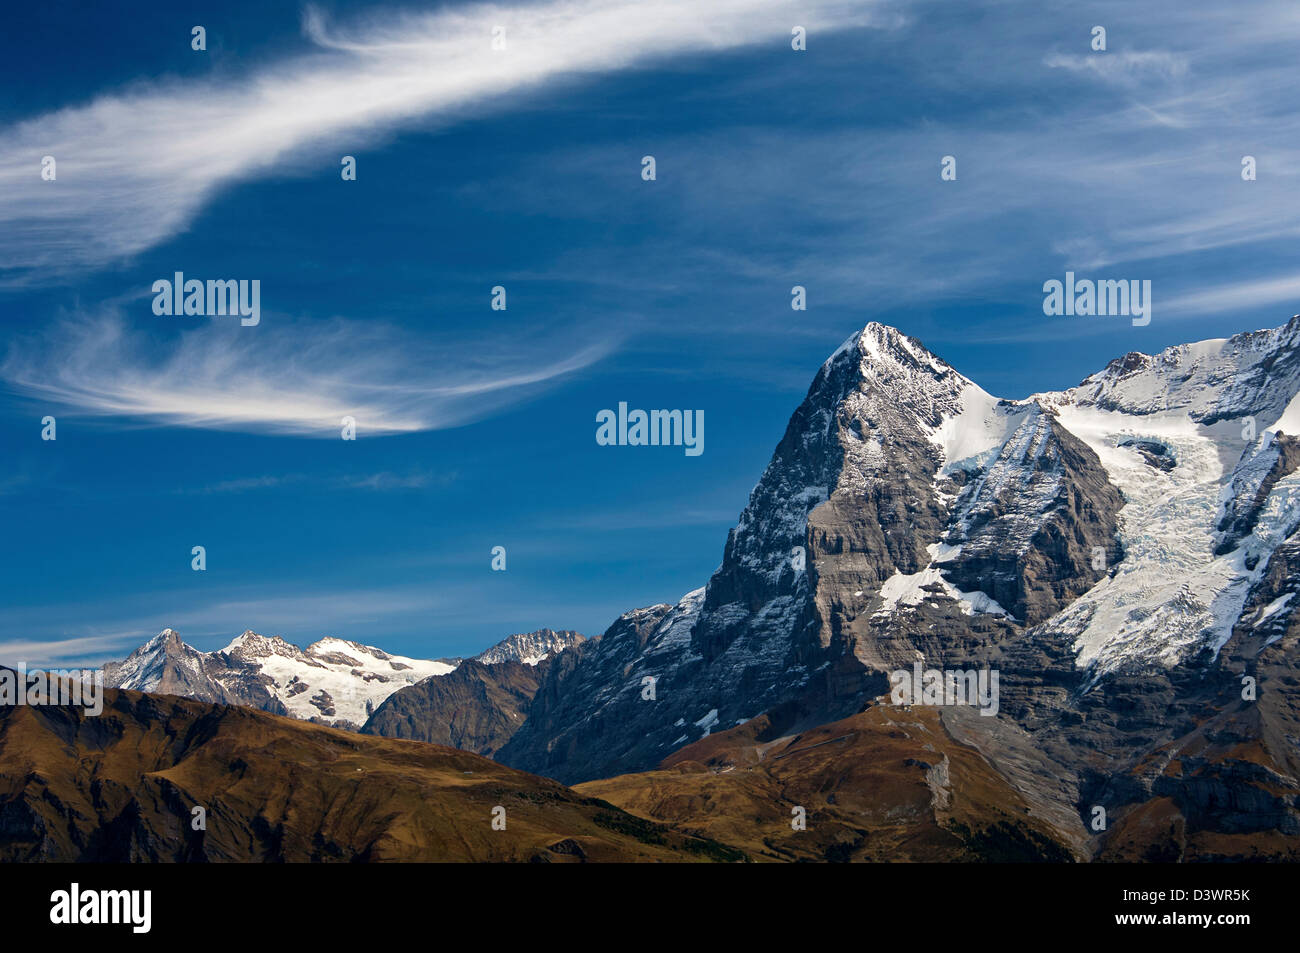 La catena montuosa delle Alpi Bernesi con il vertice di Eiger, Oberland bernese, Svizzera Foto Stock